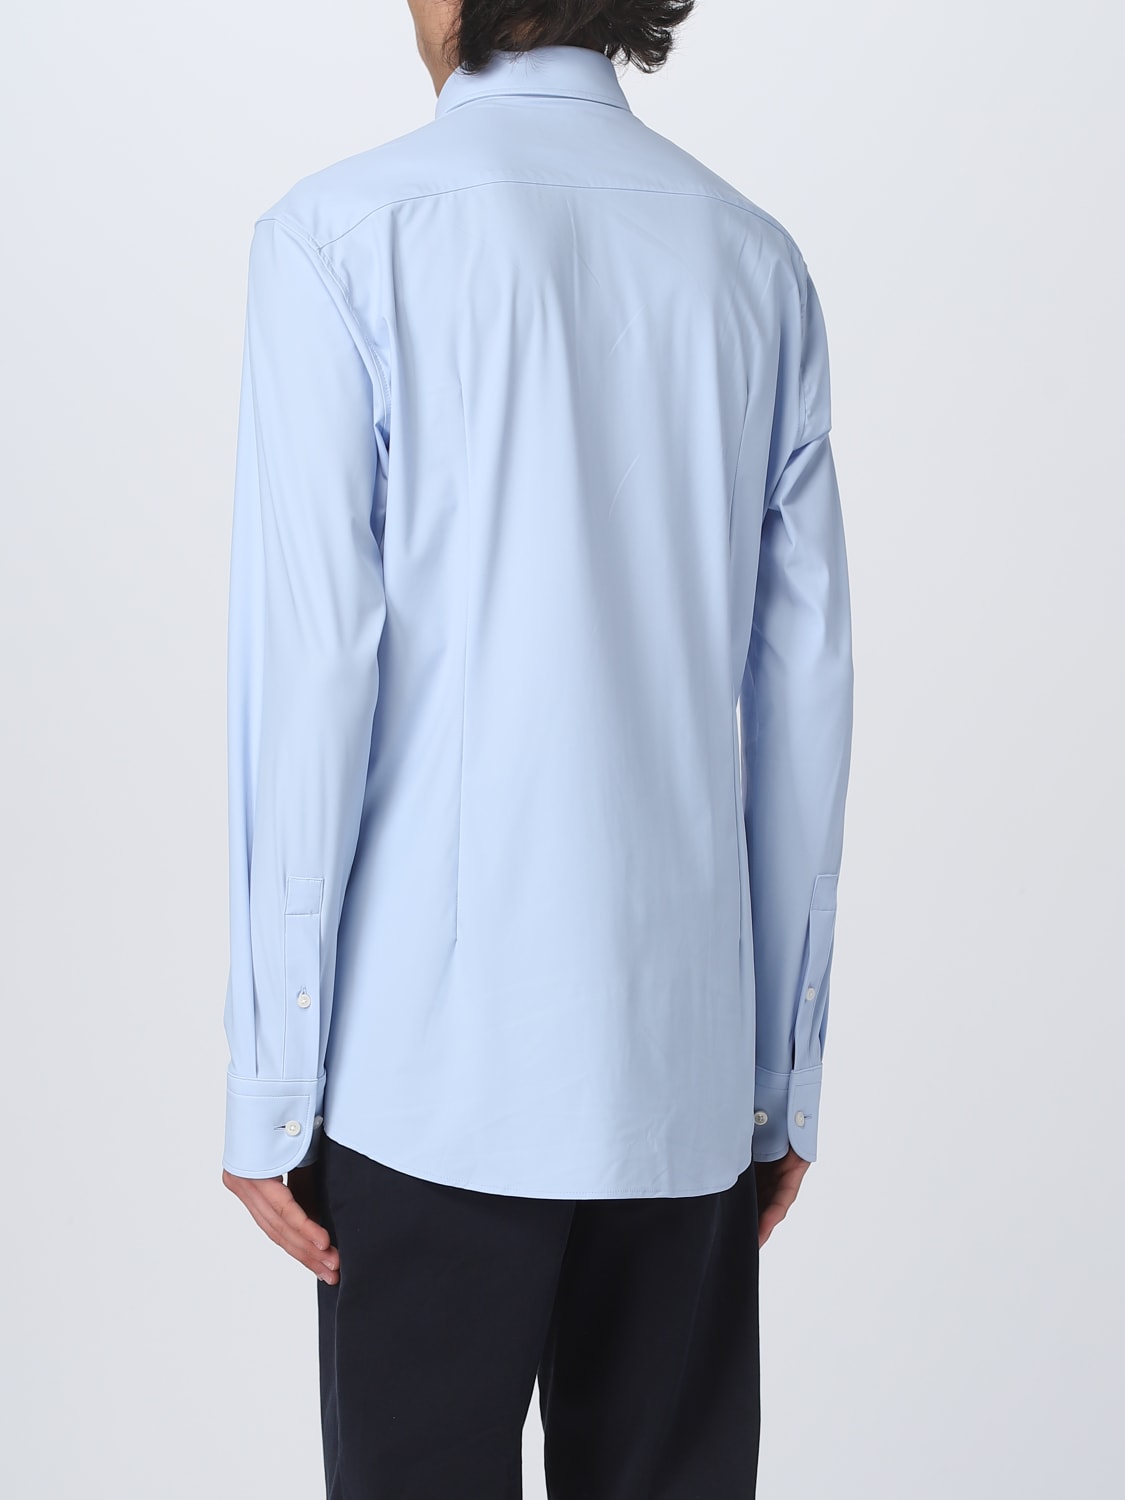 BOSS: shirt for man - Gnawed Blue | Boss shirt 50490361 online on ...